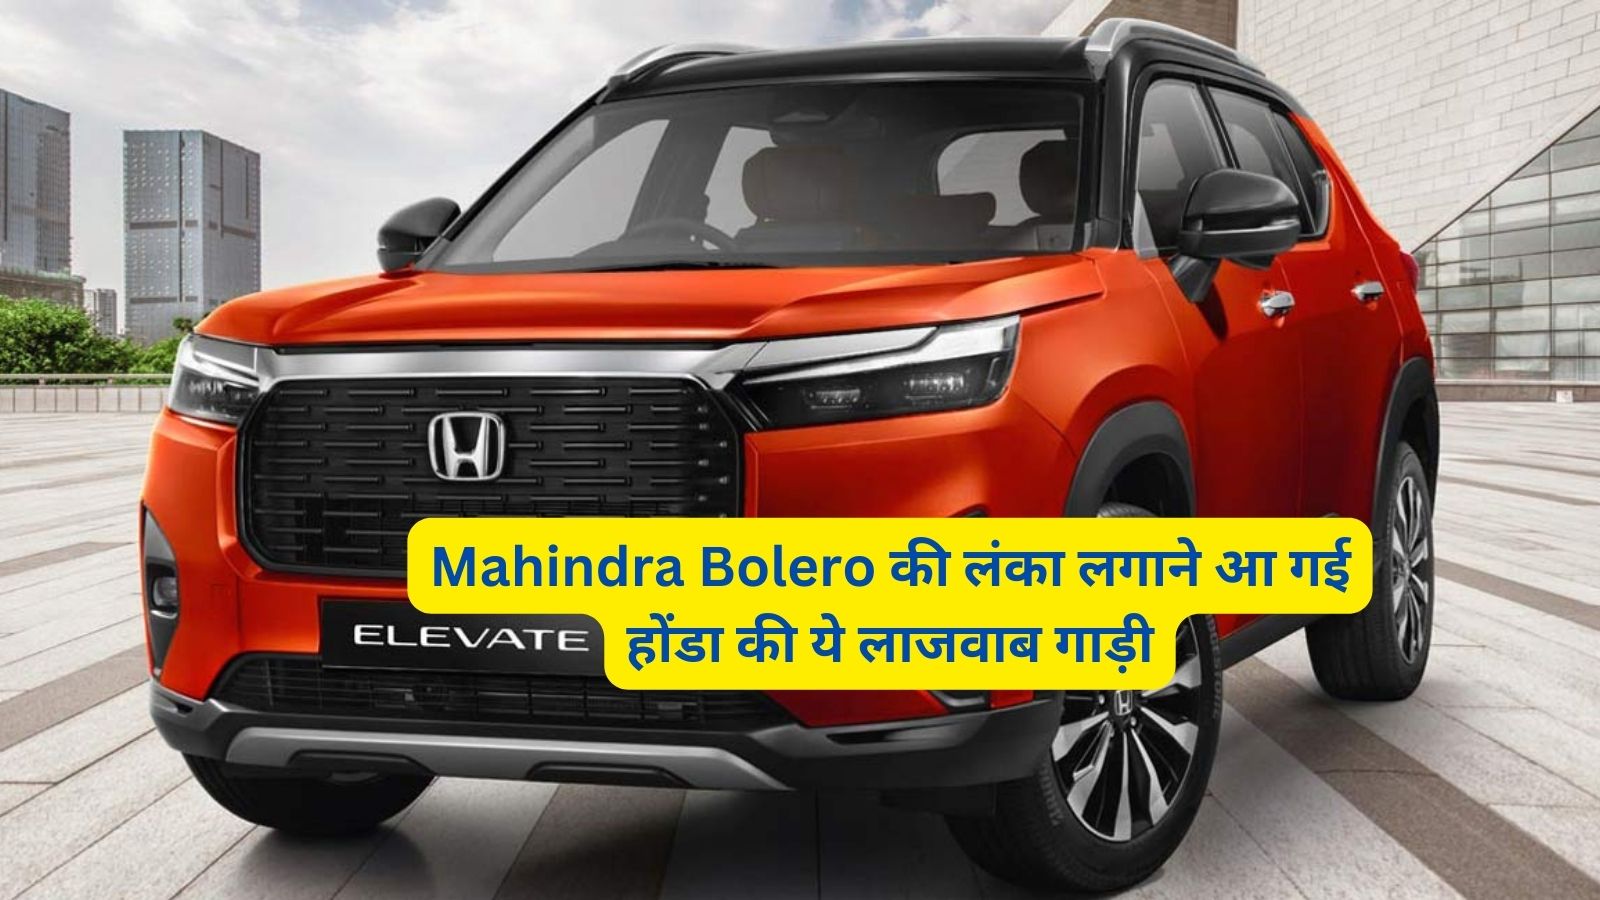 Honda Elevate: Mahindra Bolero की लंका लगाने आ गई होंडा की ये लाजवाब गाड़ी,जानिए इसके शक्तिशाली इंजन और कीमत के बारे मे